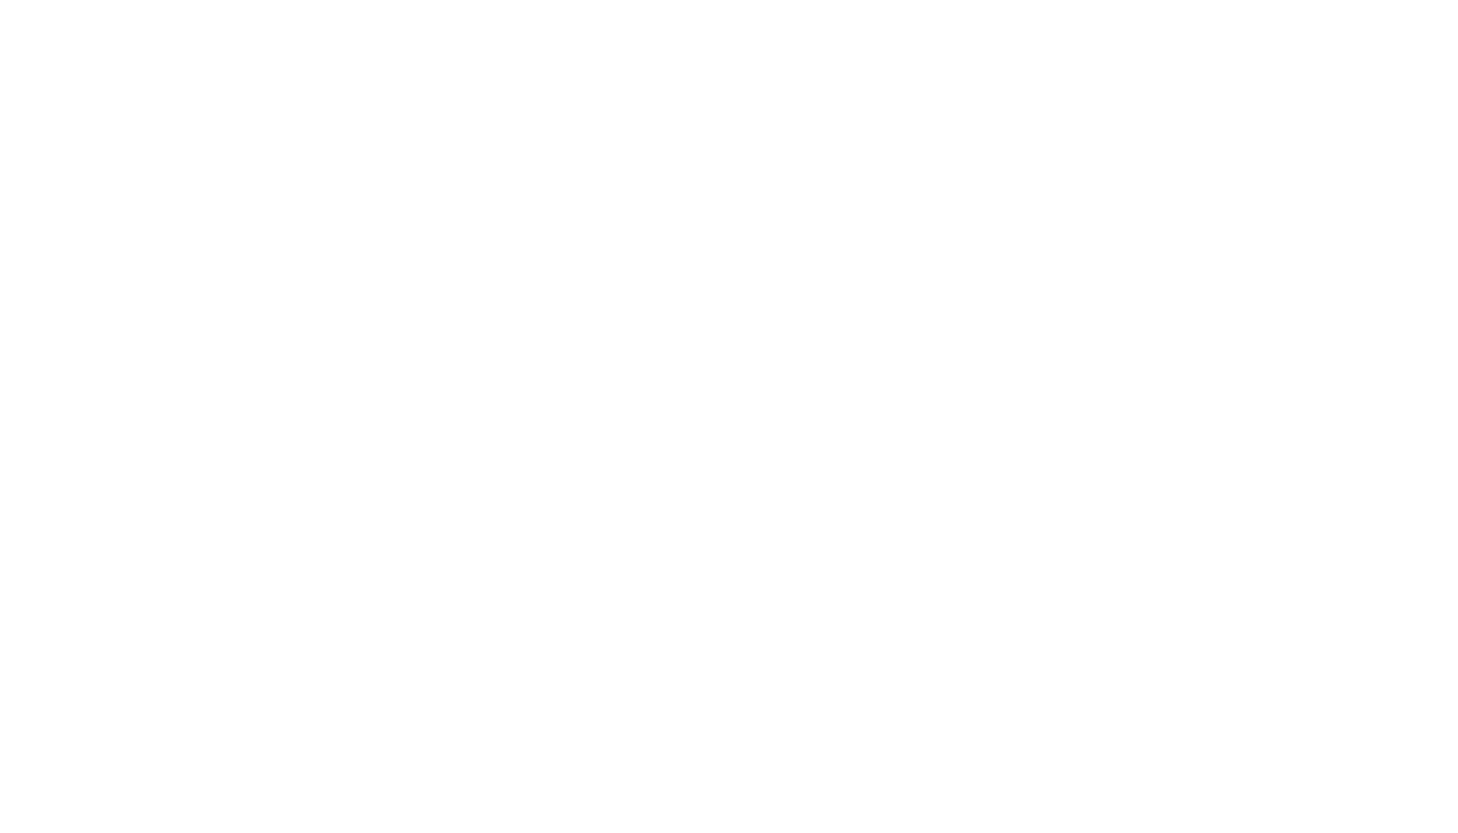 NLP Cloud